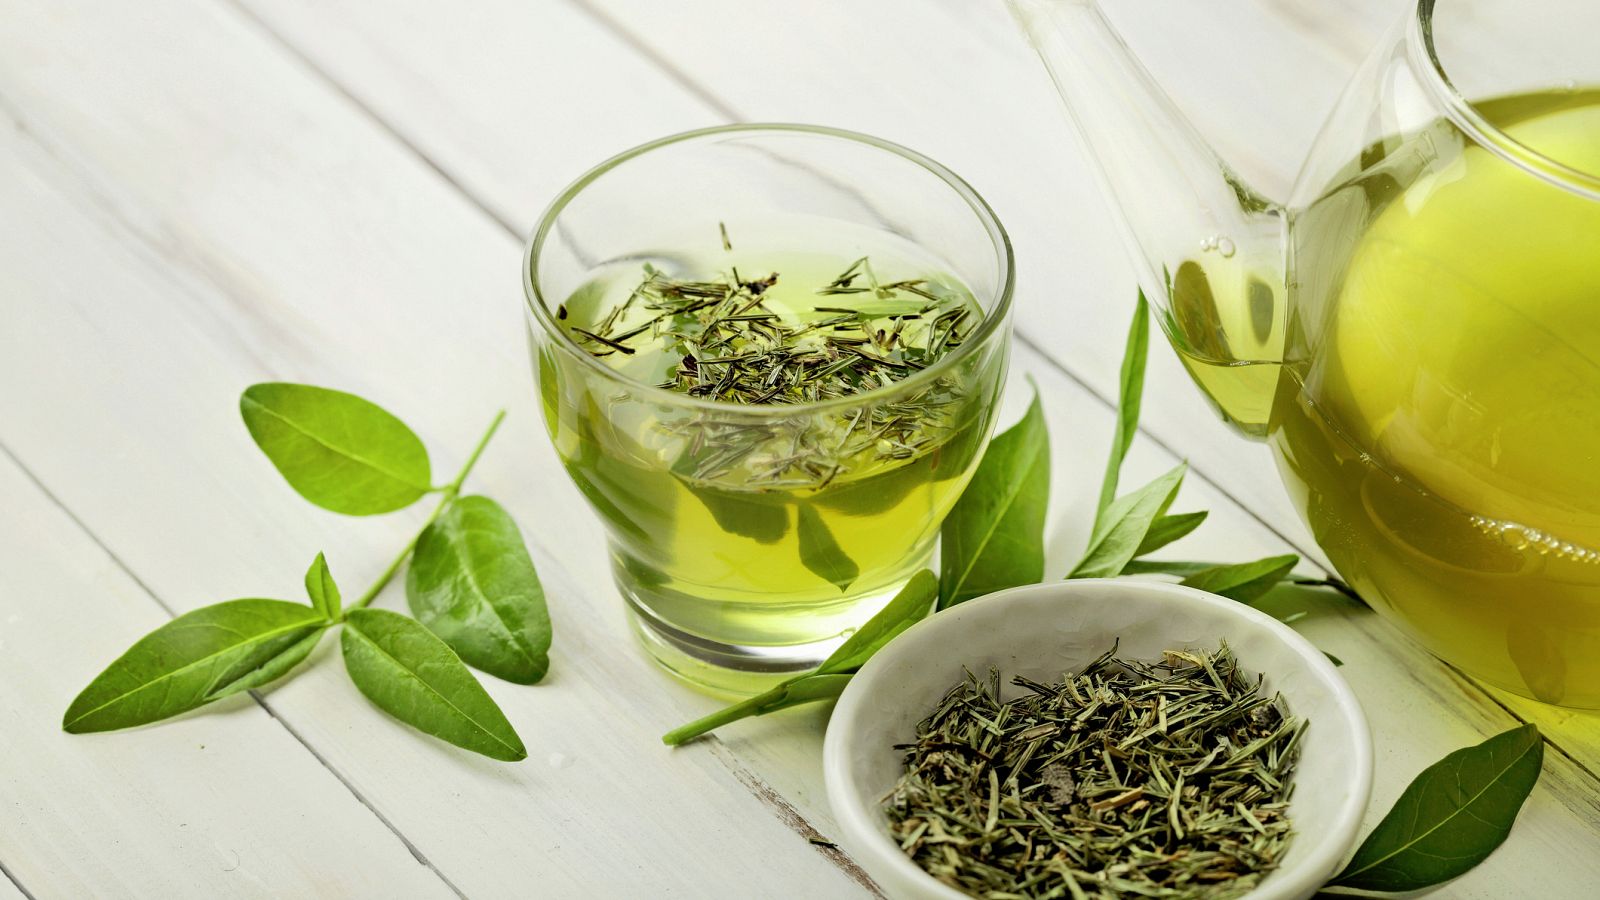 El té verde (Camellia sinensis) no es sometido a un proceso de oxidación o aireación durante su procesado, por lo que sus componentes bioactivos no se ven alterados.